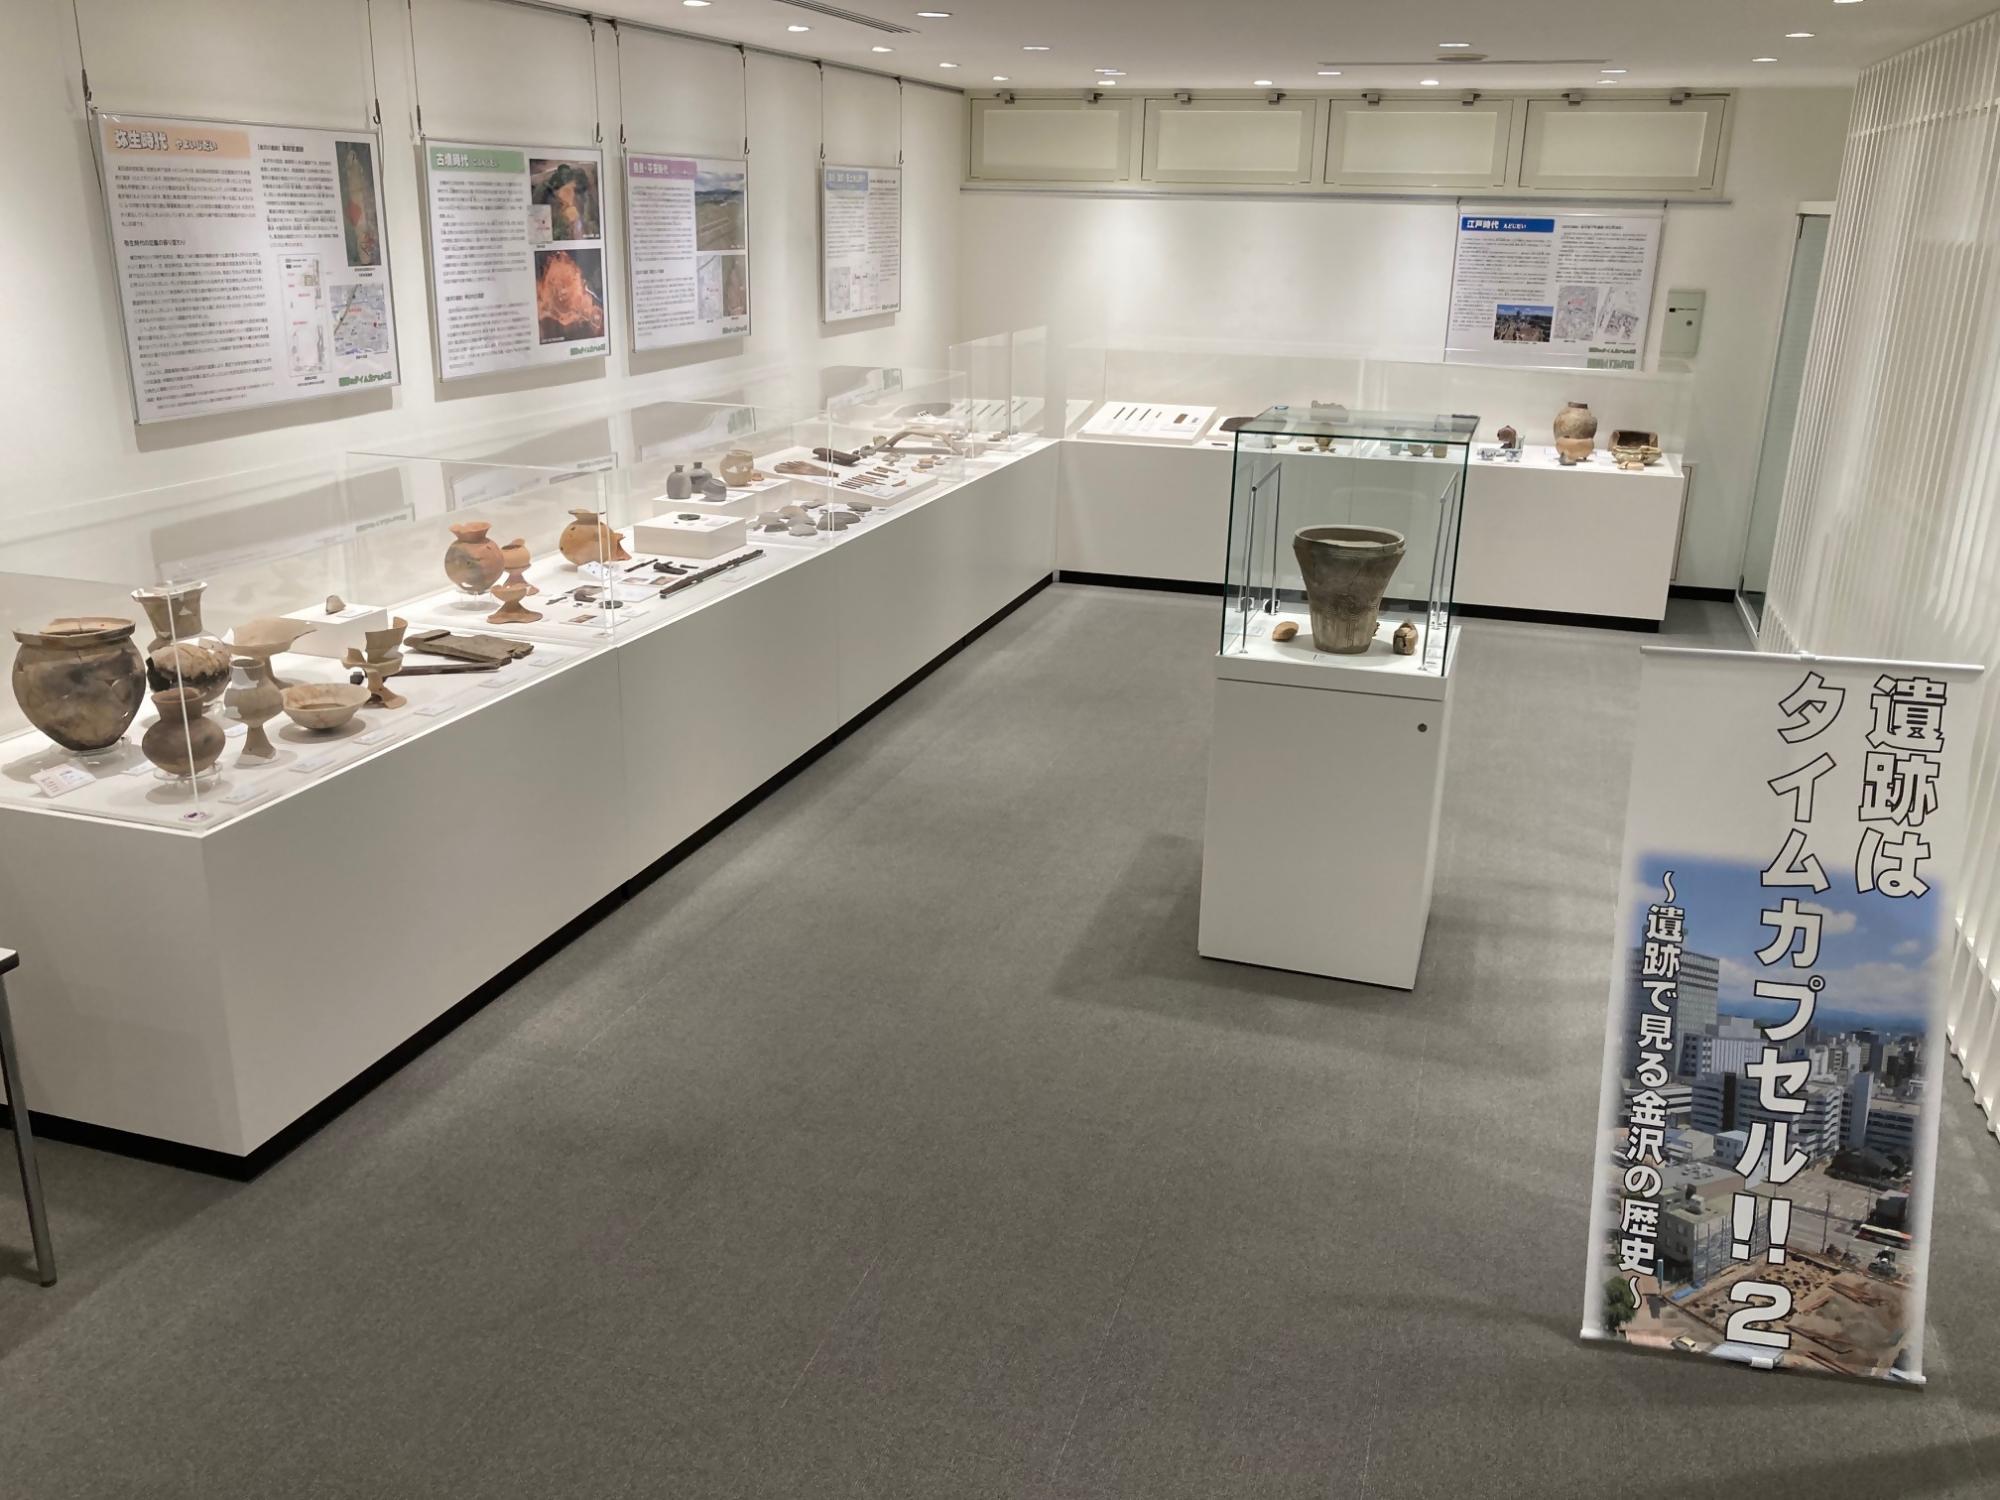 縄文時代から江戸時代の遺跡出土品が多数展示されている企画展「遺跡はタイムカプセル!!2」の展示風景